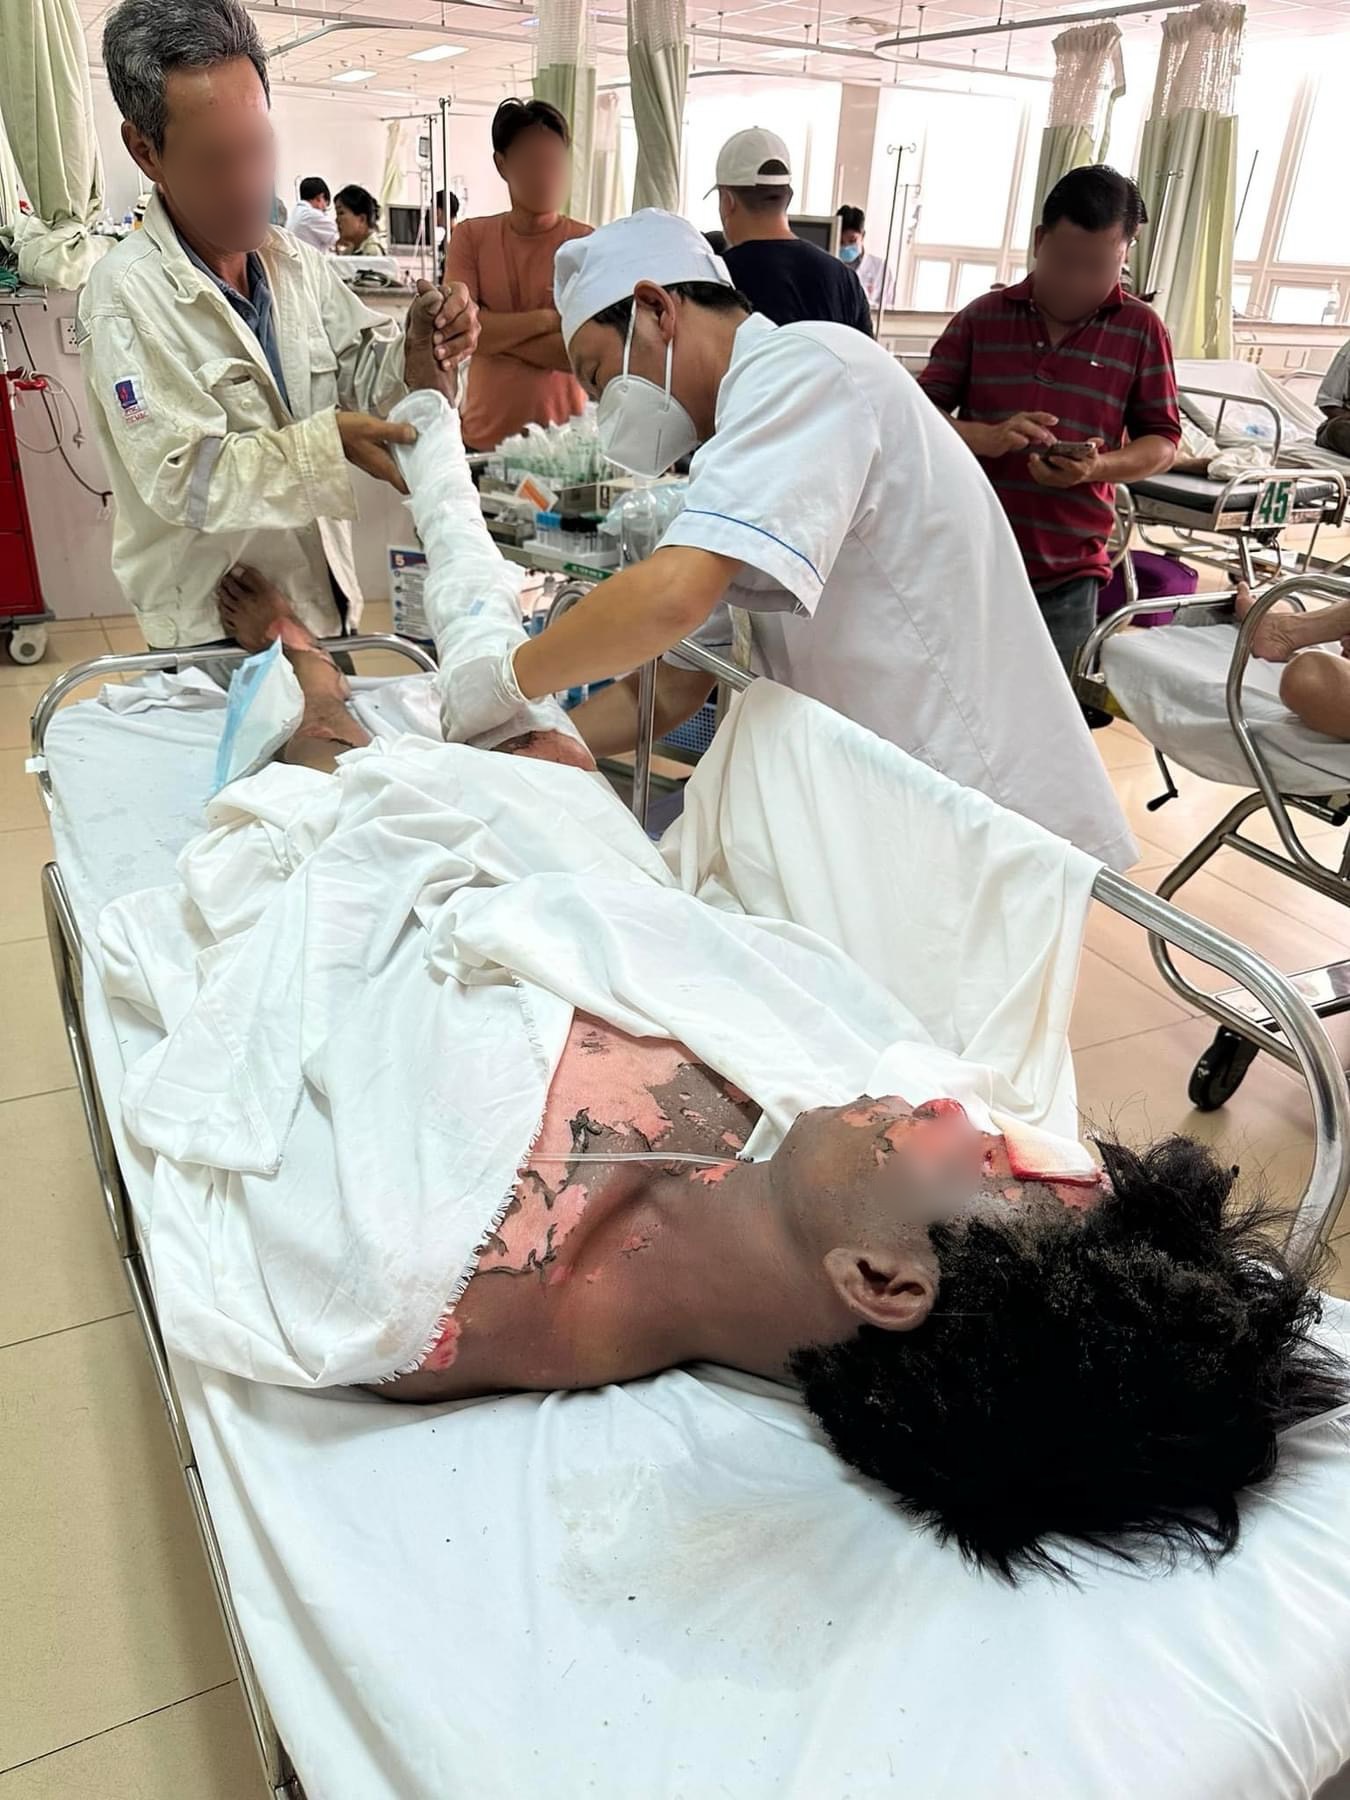 Một công nhân bị điện giật gây bỏng nặng phải nhập viện cấp cứu - Ảnh 1.